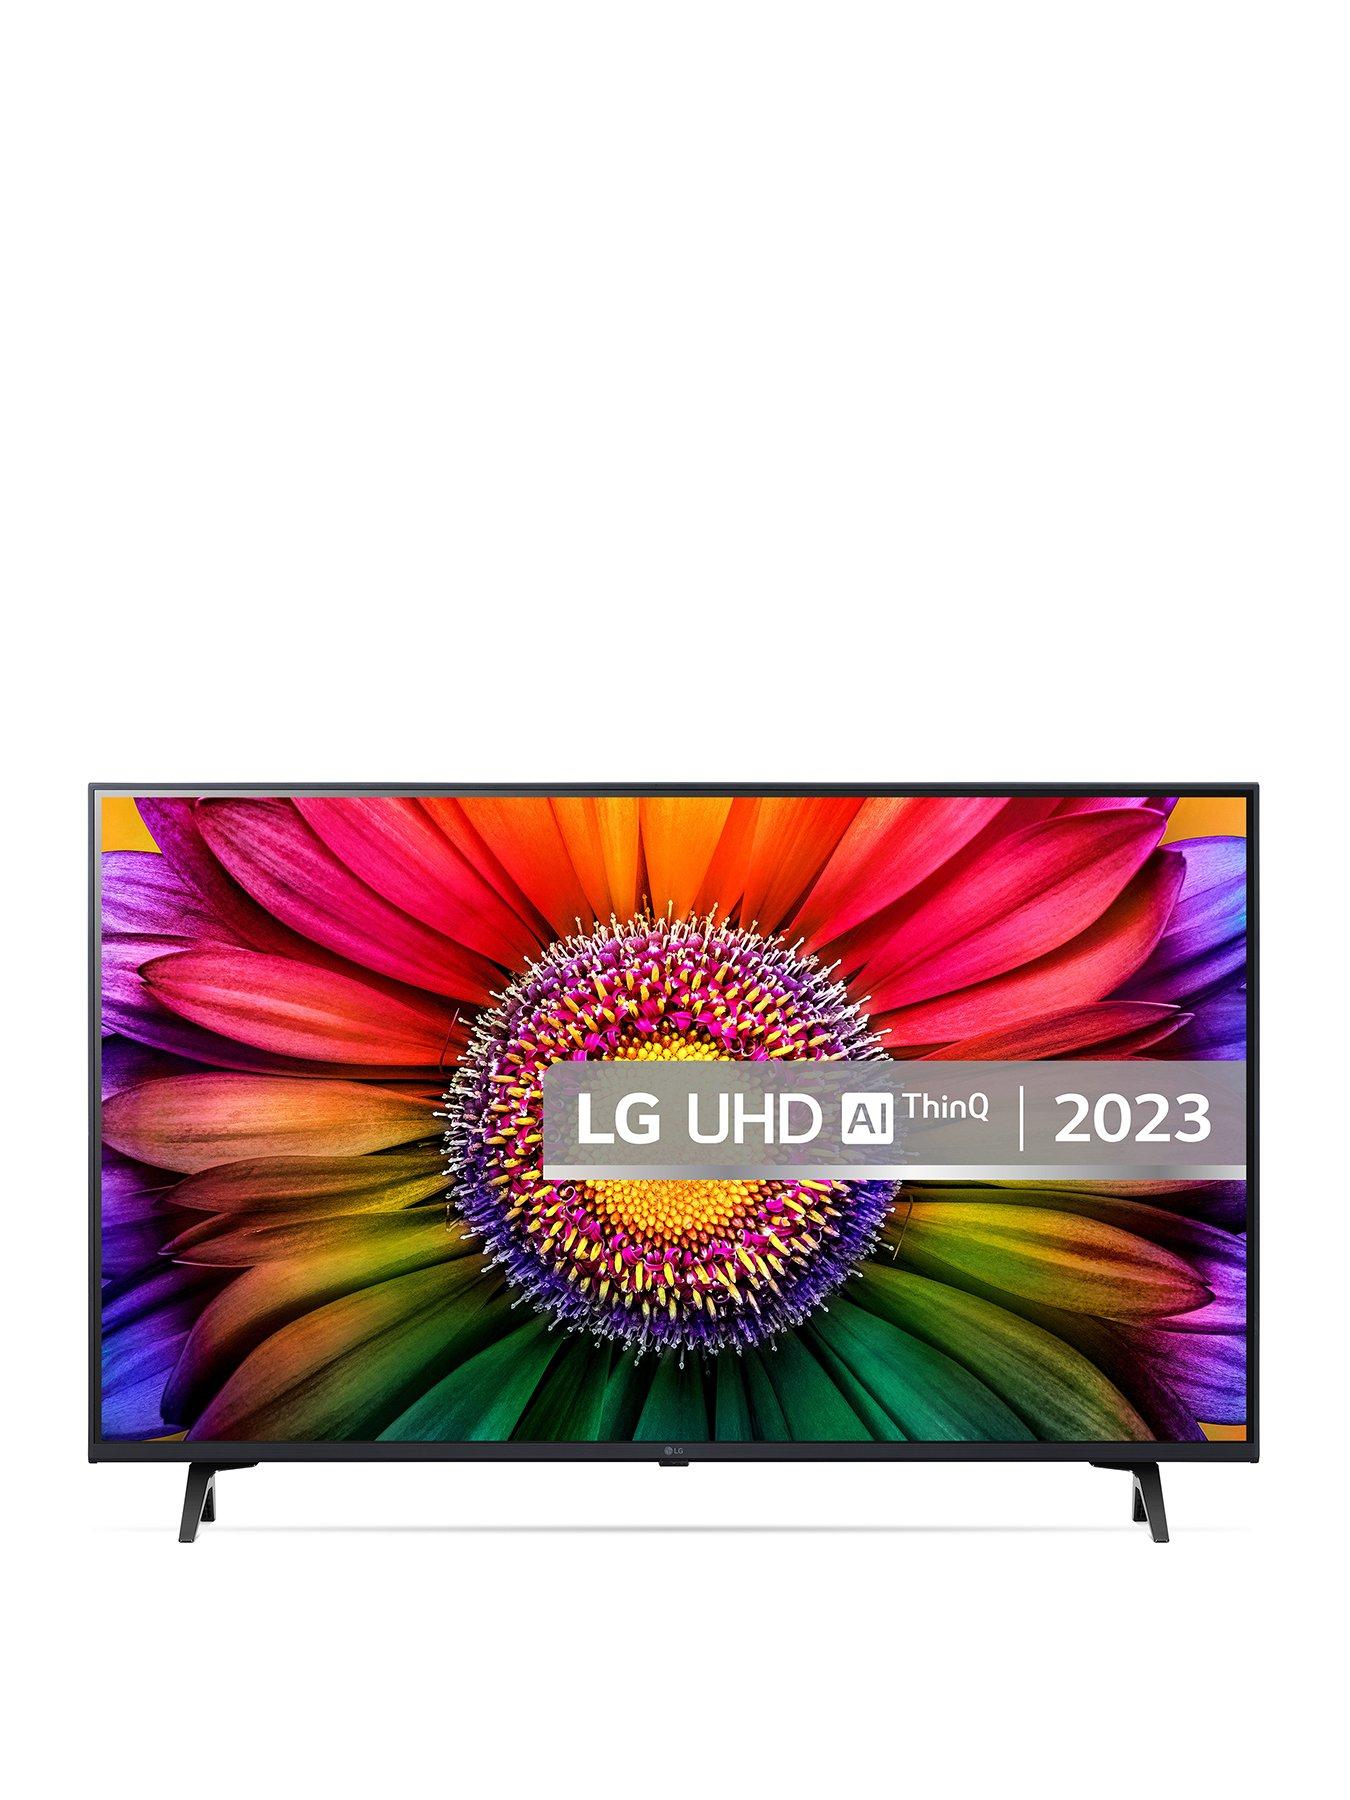 TV LG 43” -43LM6370PSB FHD ThinQ AI SMART - Sin color — Tienda Cabal